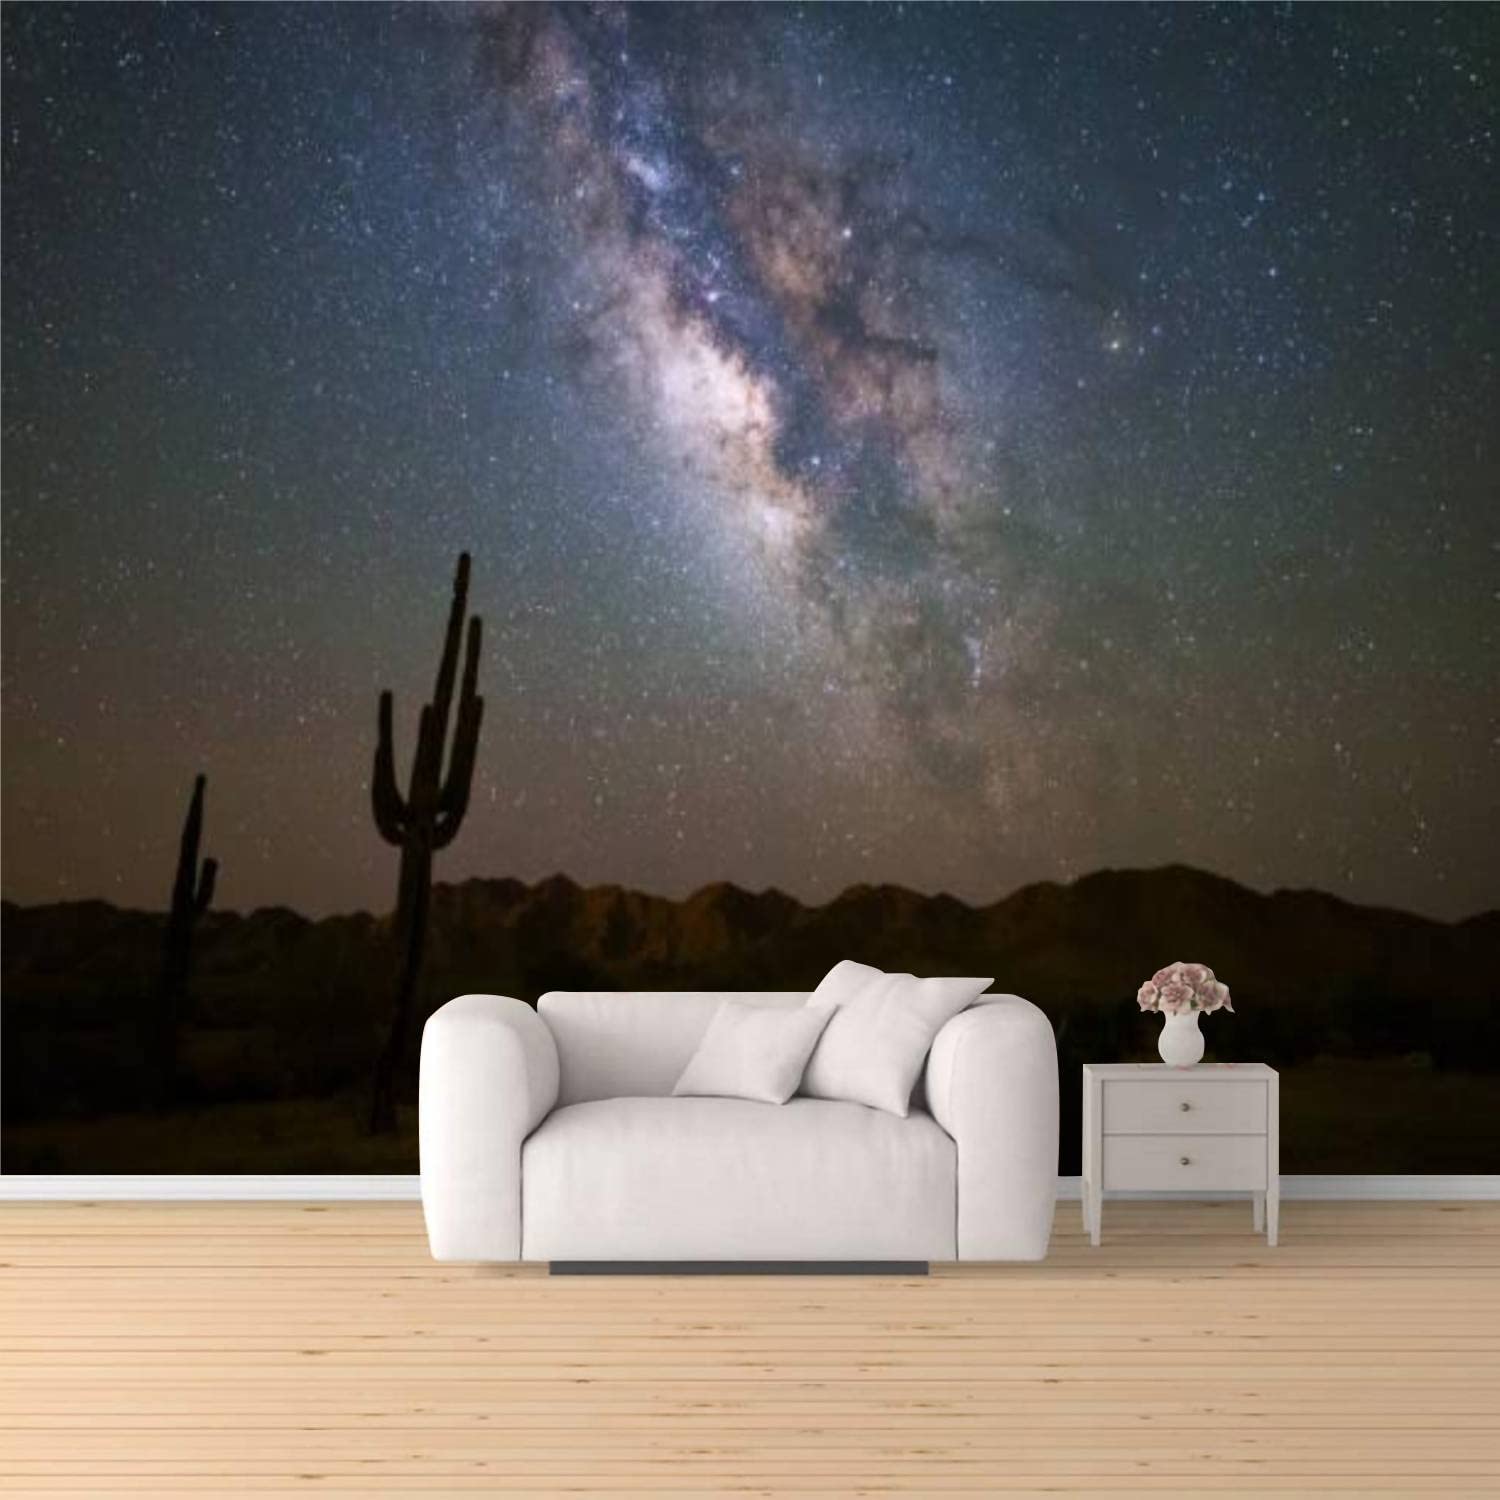 Milky Way Desert Wallpapers